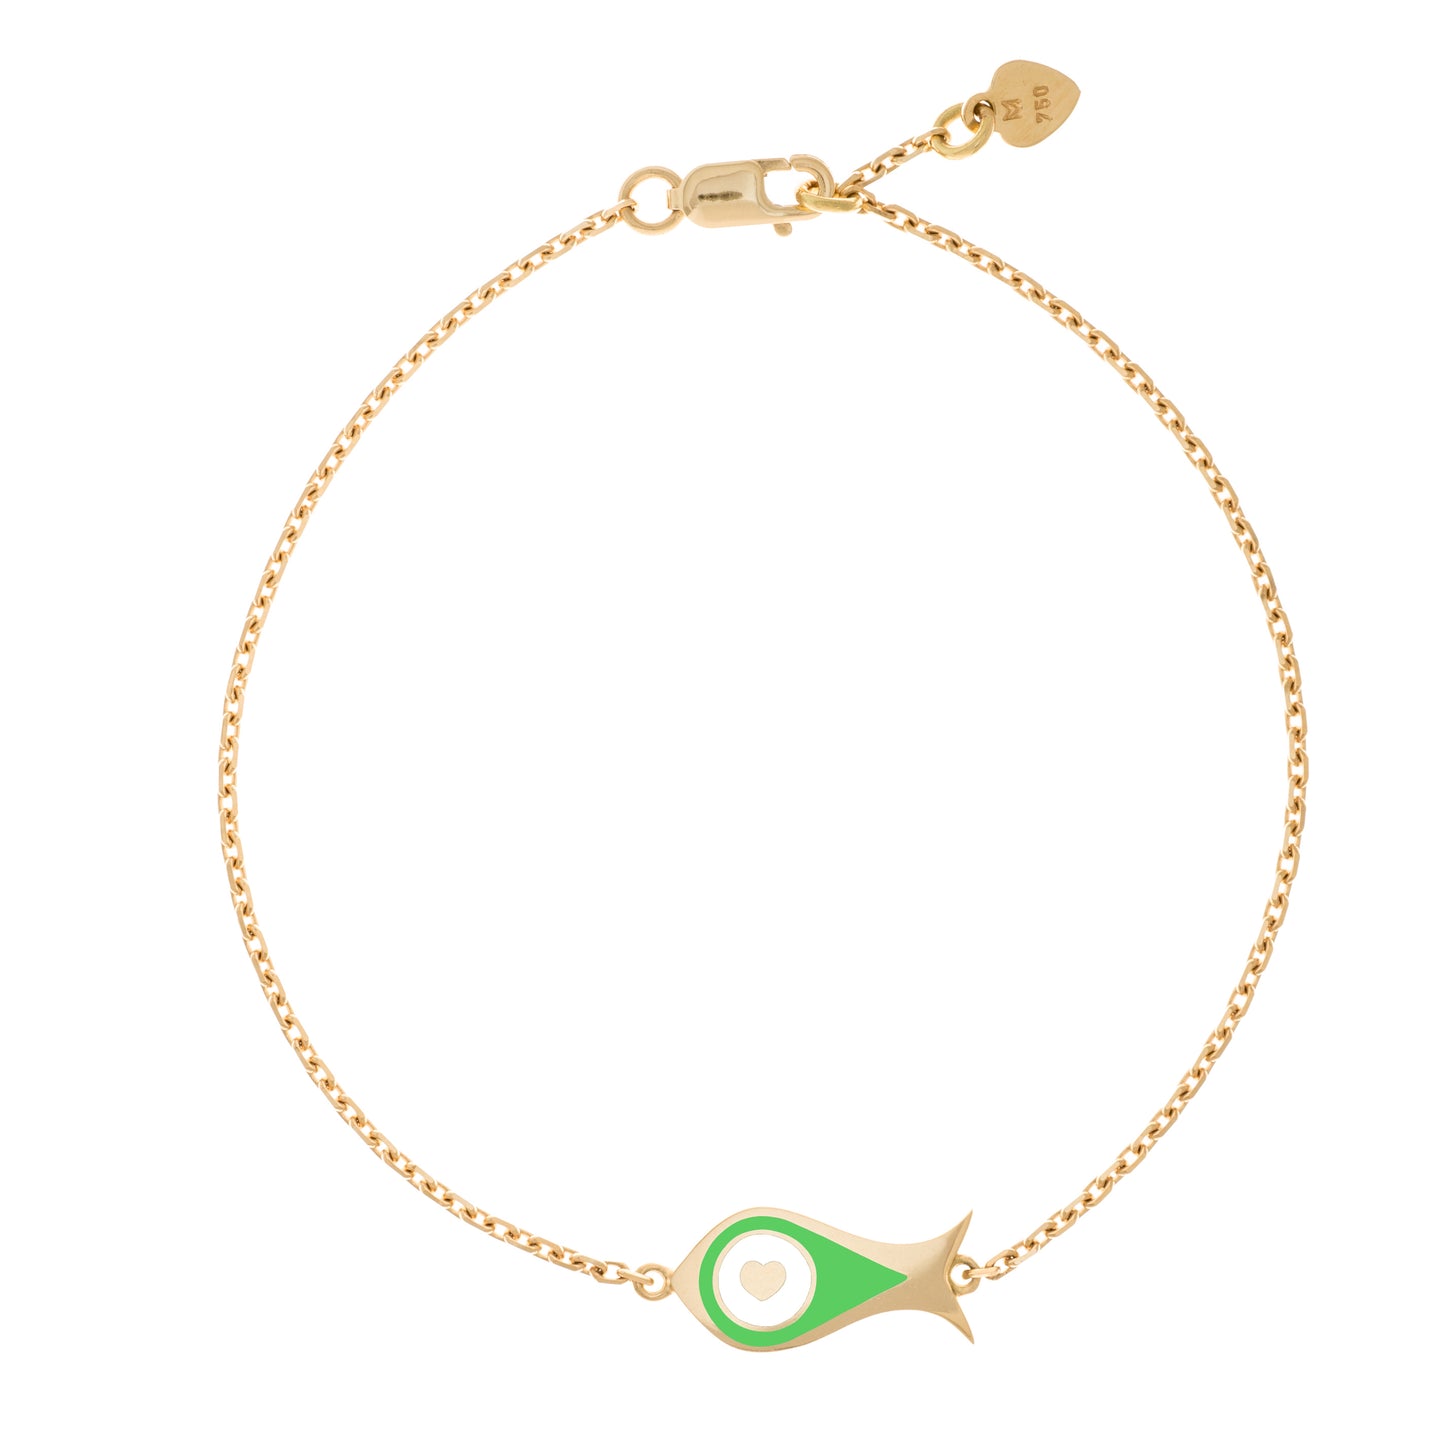 MORA bijoux, bracelet Poisson-coeur lchthys émaillé vert d'un diamètre de 15mm en or jaune 18 carats. Longueur de la chaîne 16cm avec un petit coeur en or jaune 18 carats soudé sur le fermoir.